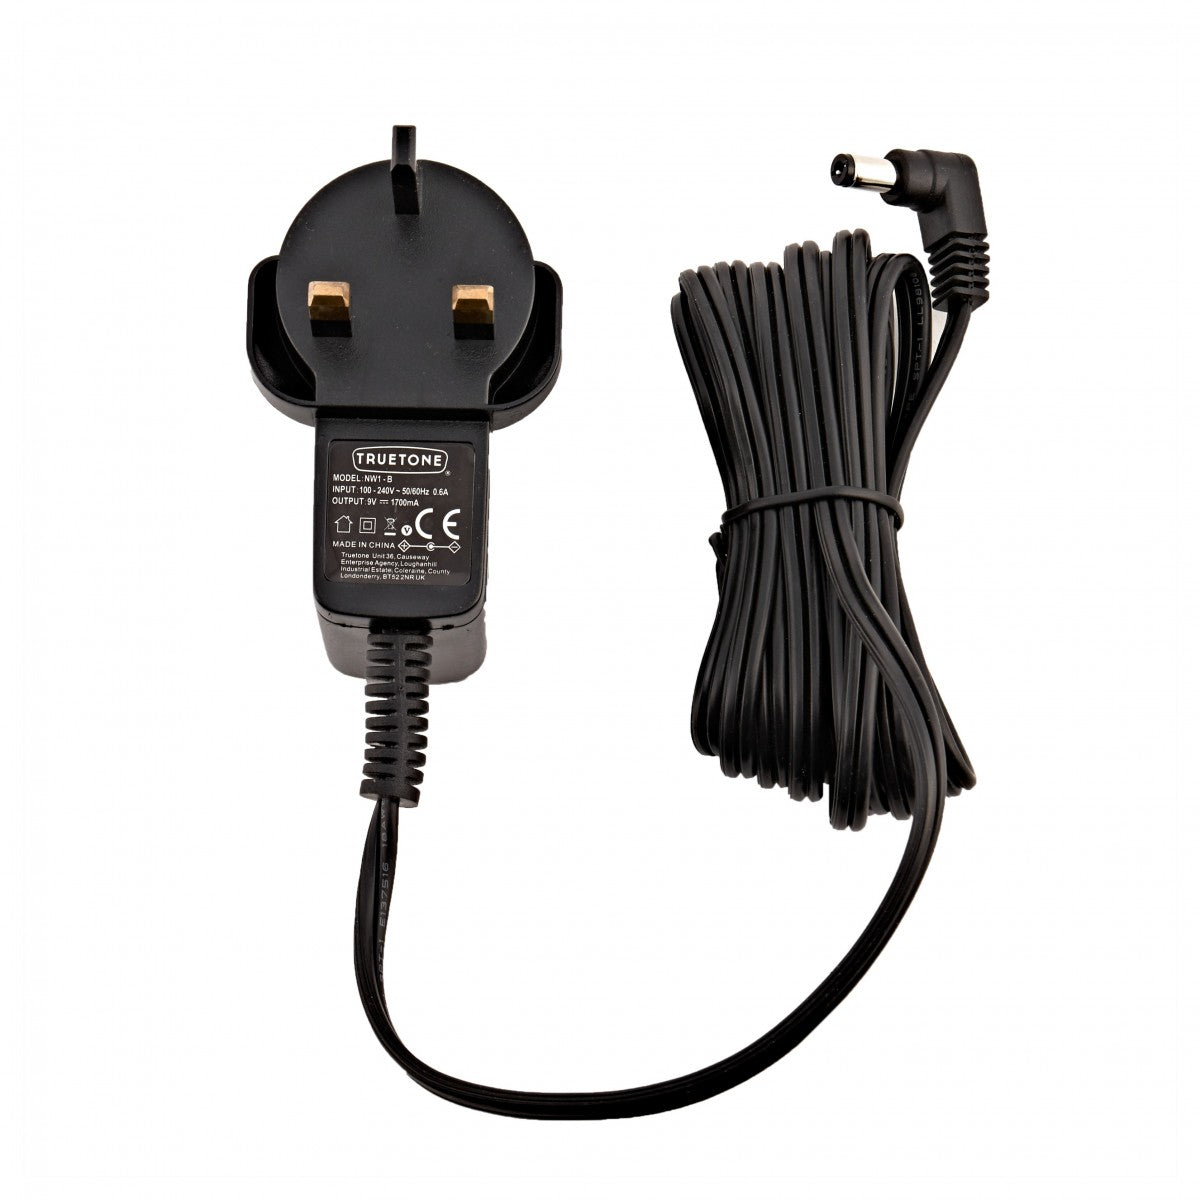 Truetone 1 Spot 9V Power Supply Adaptor for Guitar Effect Pedals - Reco Music Malaysia